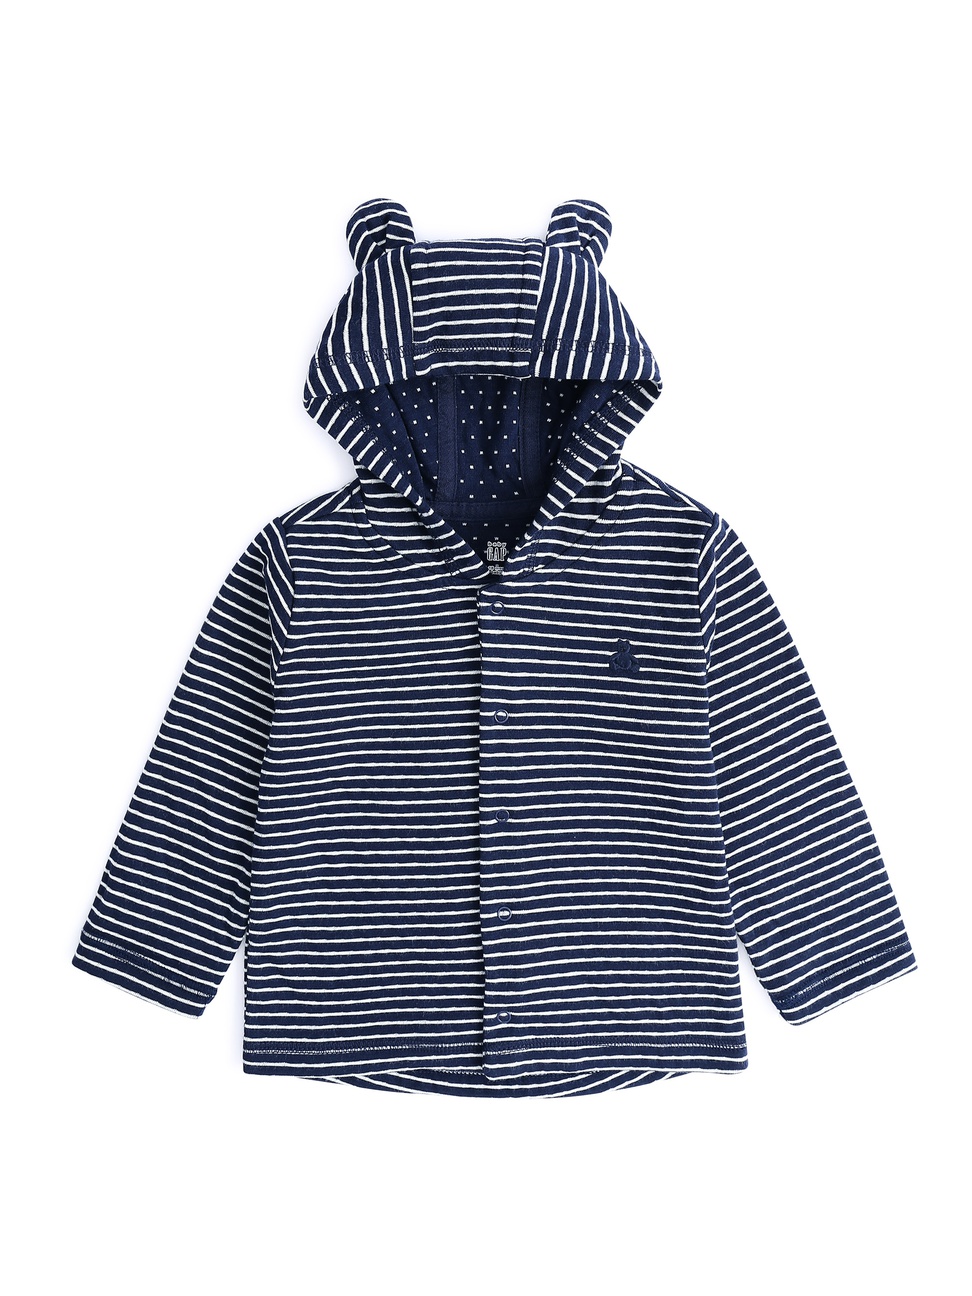 嬰兒裝|舒適棉質釦式熊耳連帽外套-海軍藍色